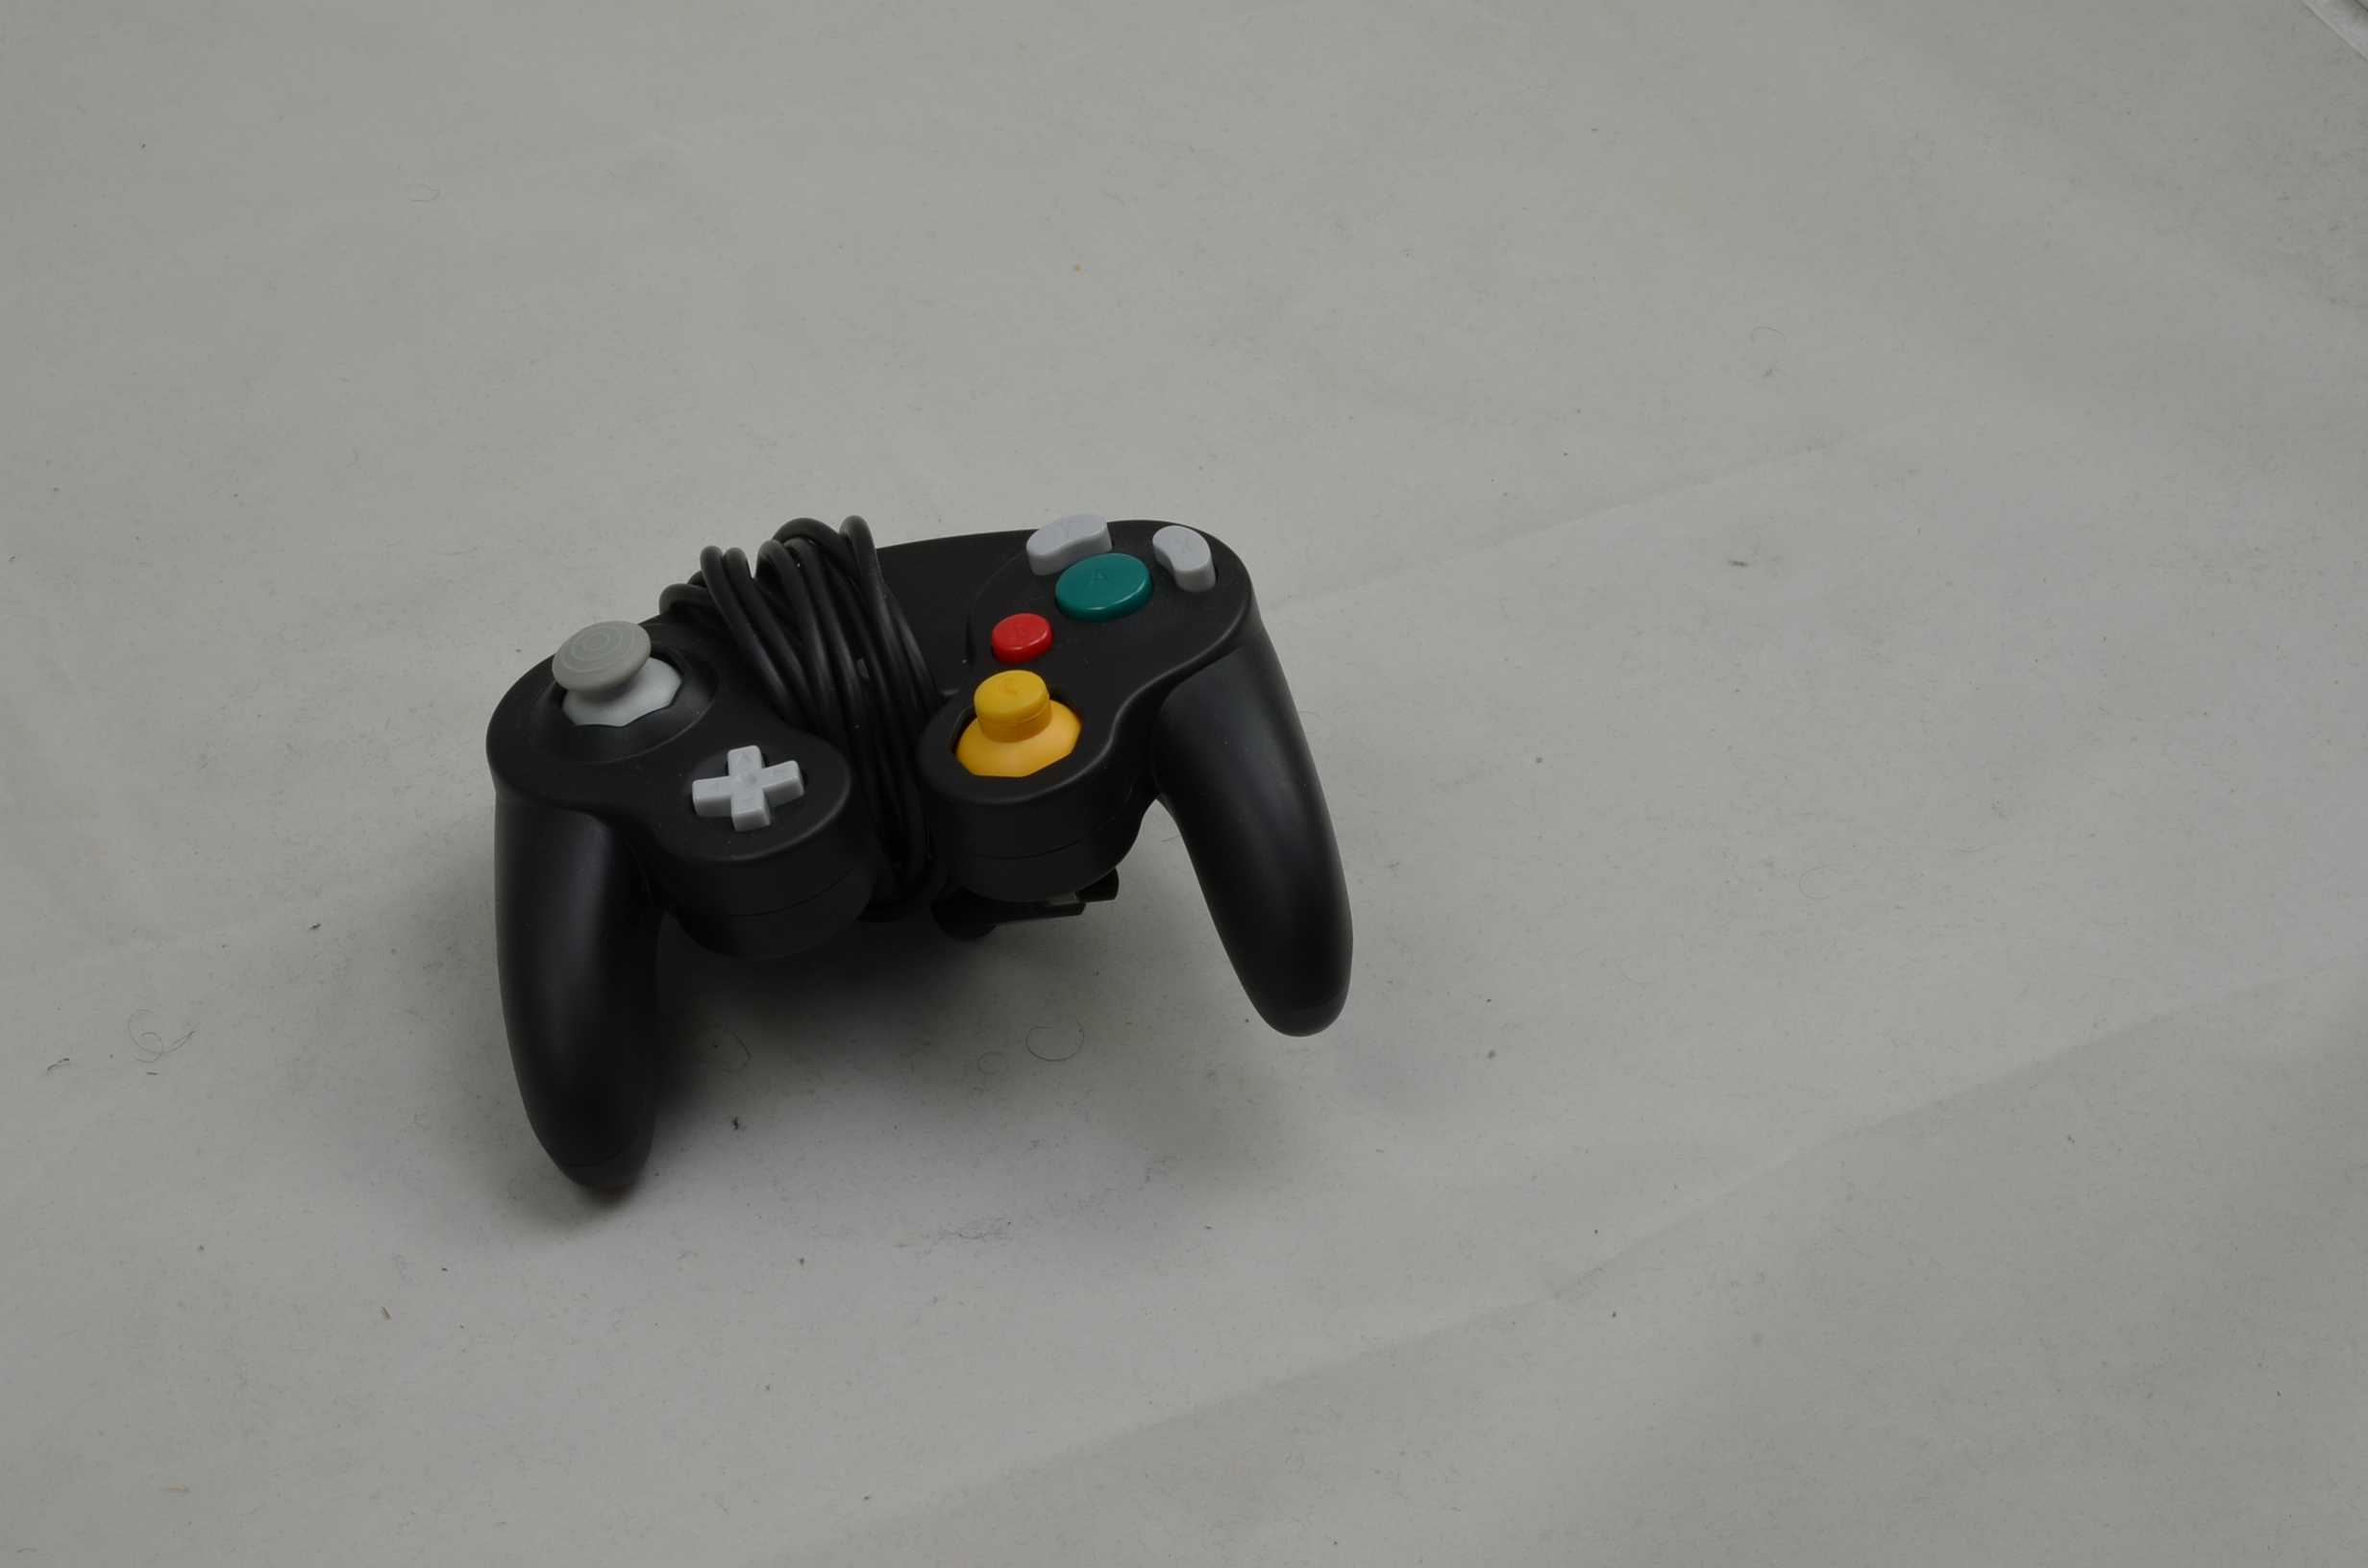 Produktbild von Nintendo GameCube No Name Controller